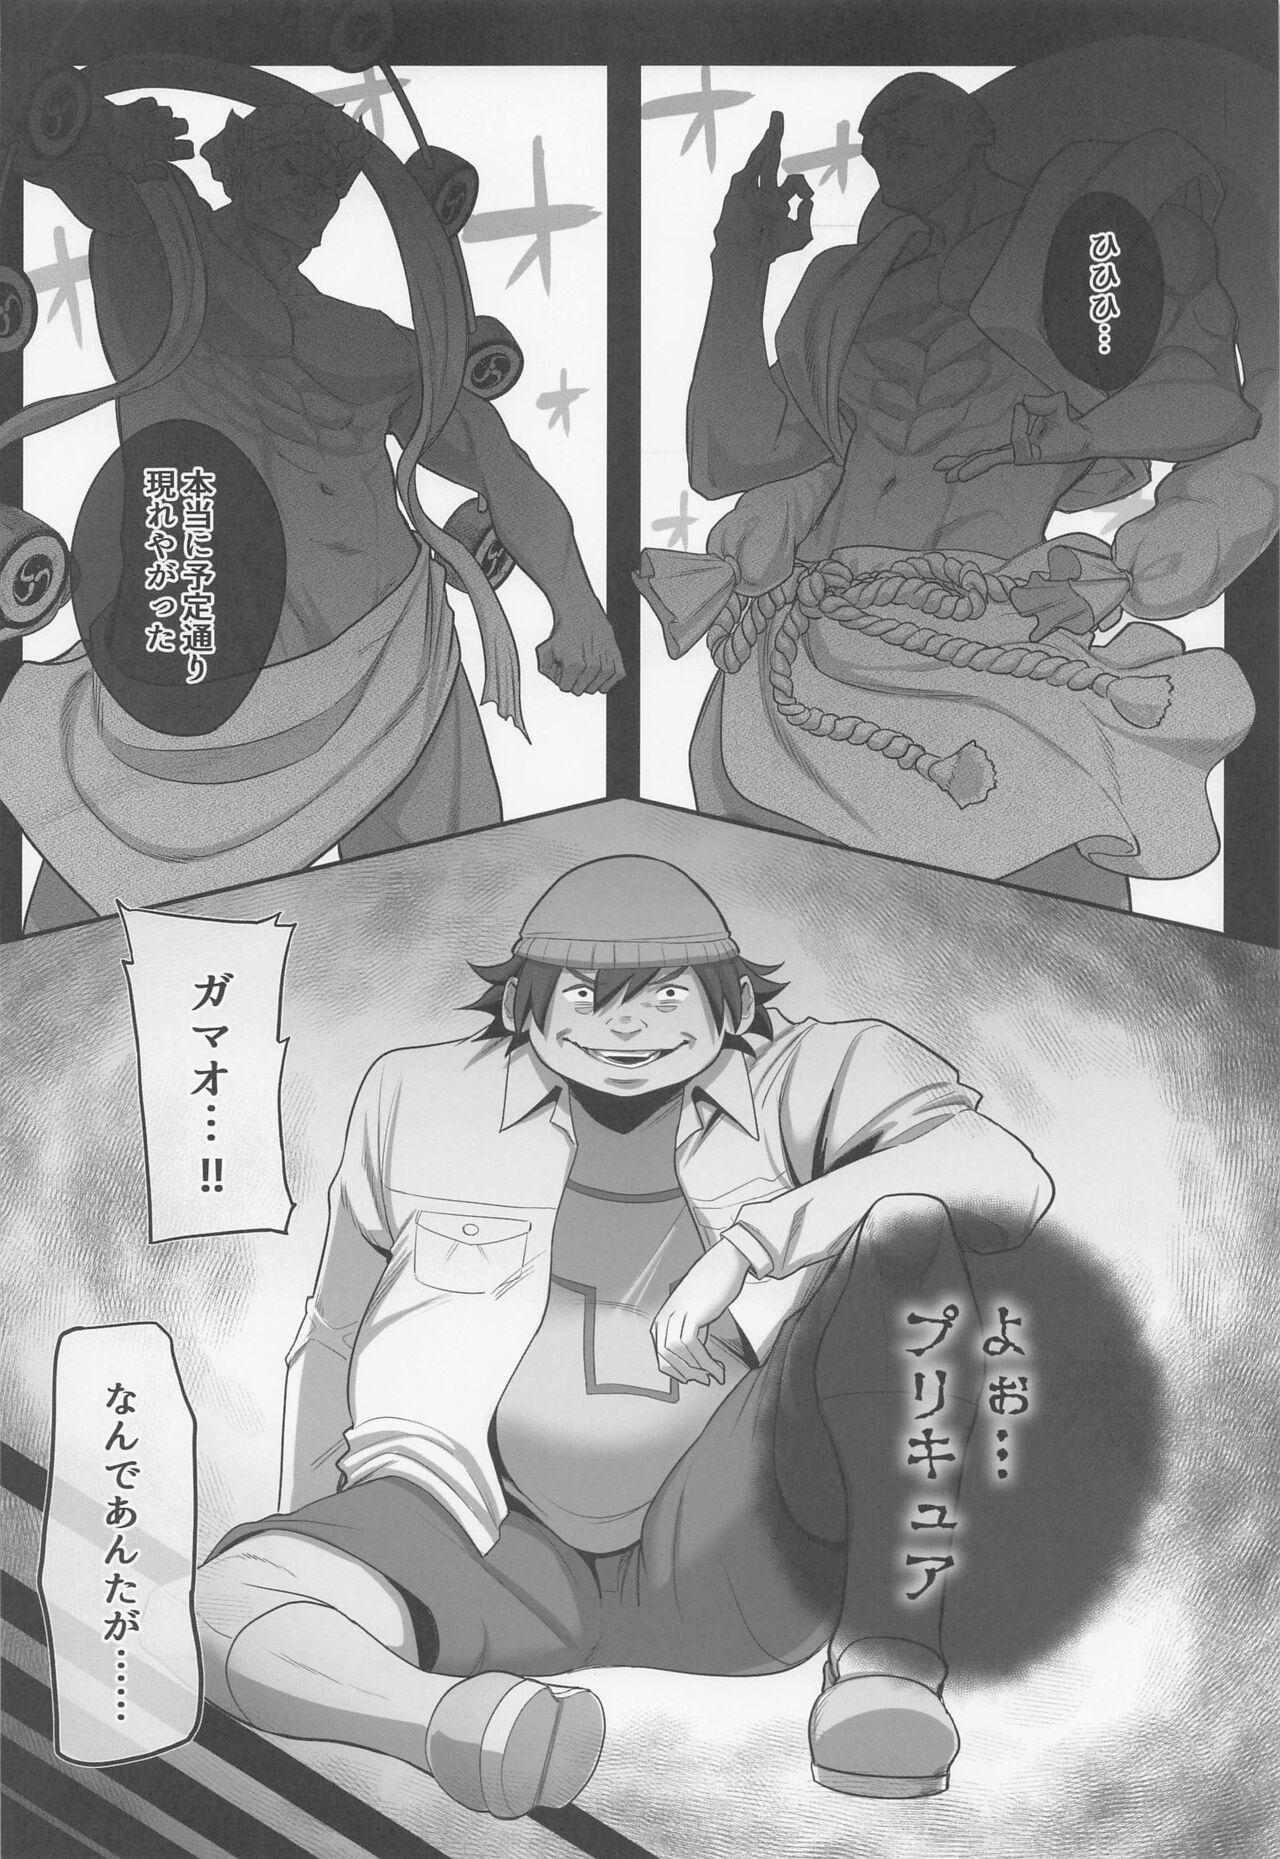 Cosplay Precure no Rakujitsu 2 - Yes precure 5 Belly - Page 3